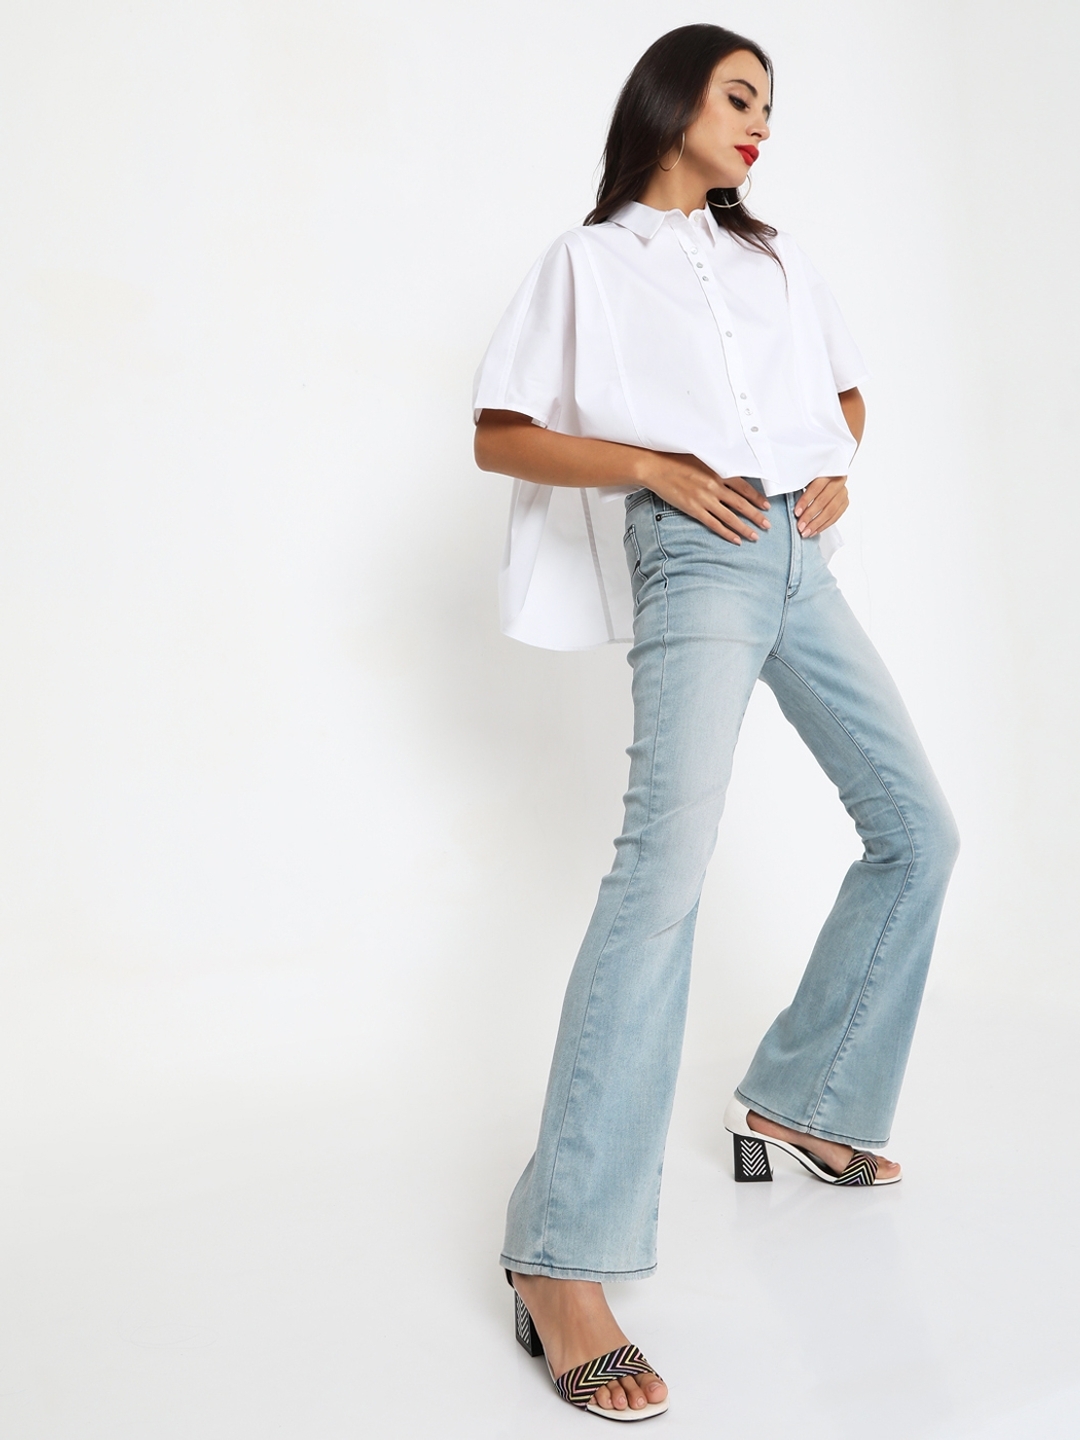 How To Style Flared Jeans | HerZindagi